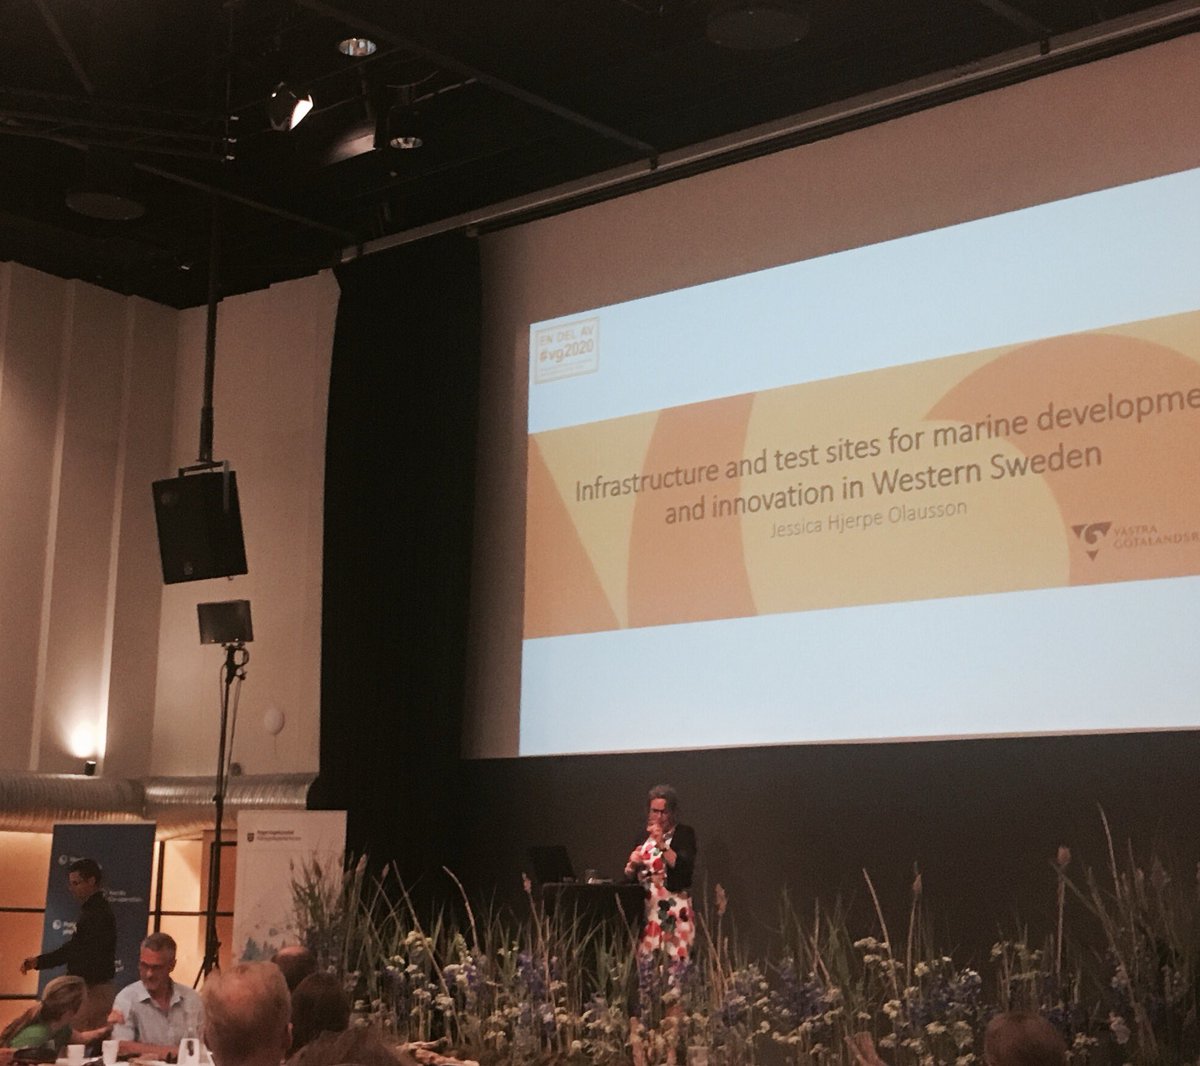 Blå bioekonomikonferens i Malmö - @VGR_regionalutv @jeshjeO på plats och pratar om sitt strategiska arbetet med de marintima näringar.